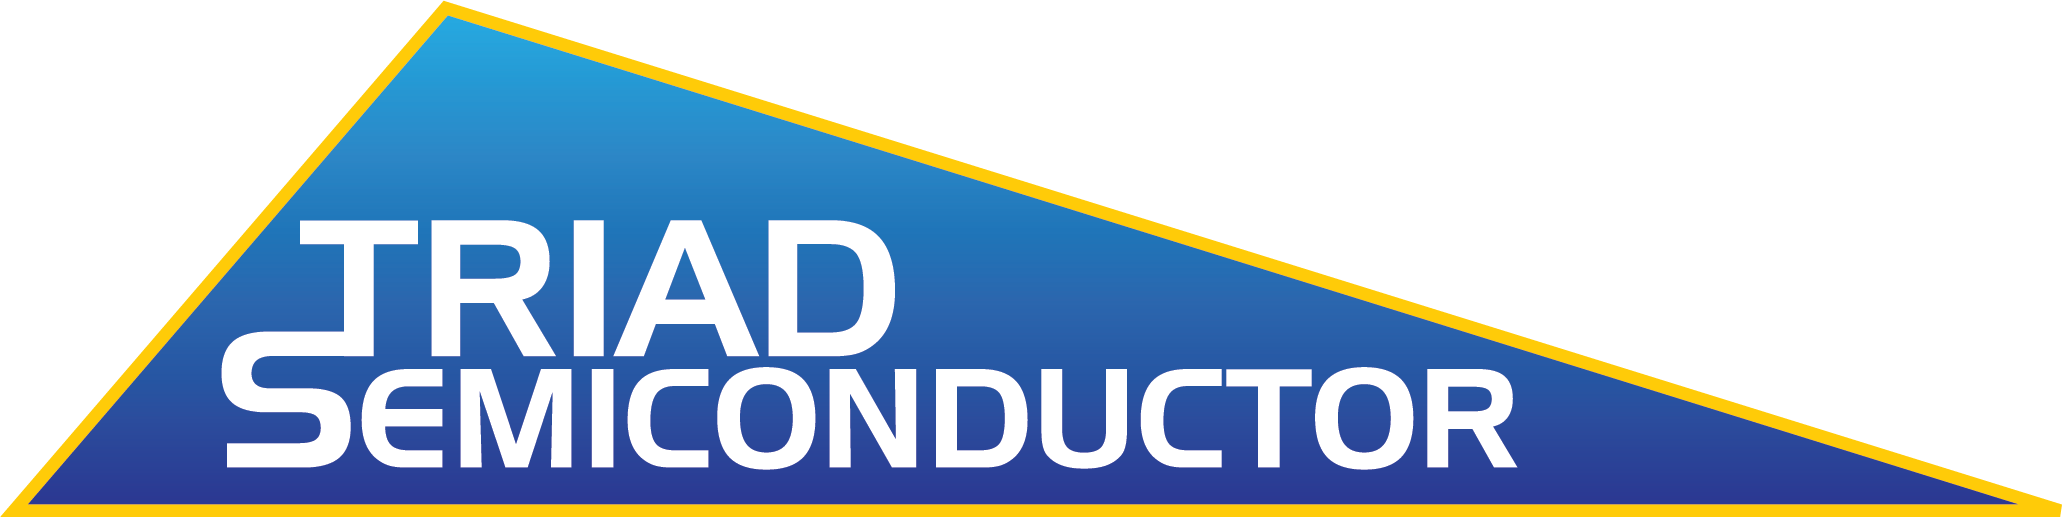 Triad Semiconductor, Inc. LOGO